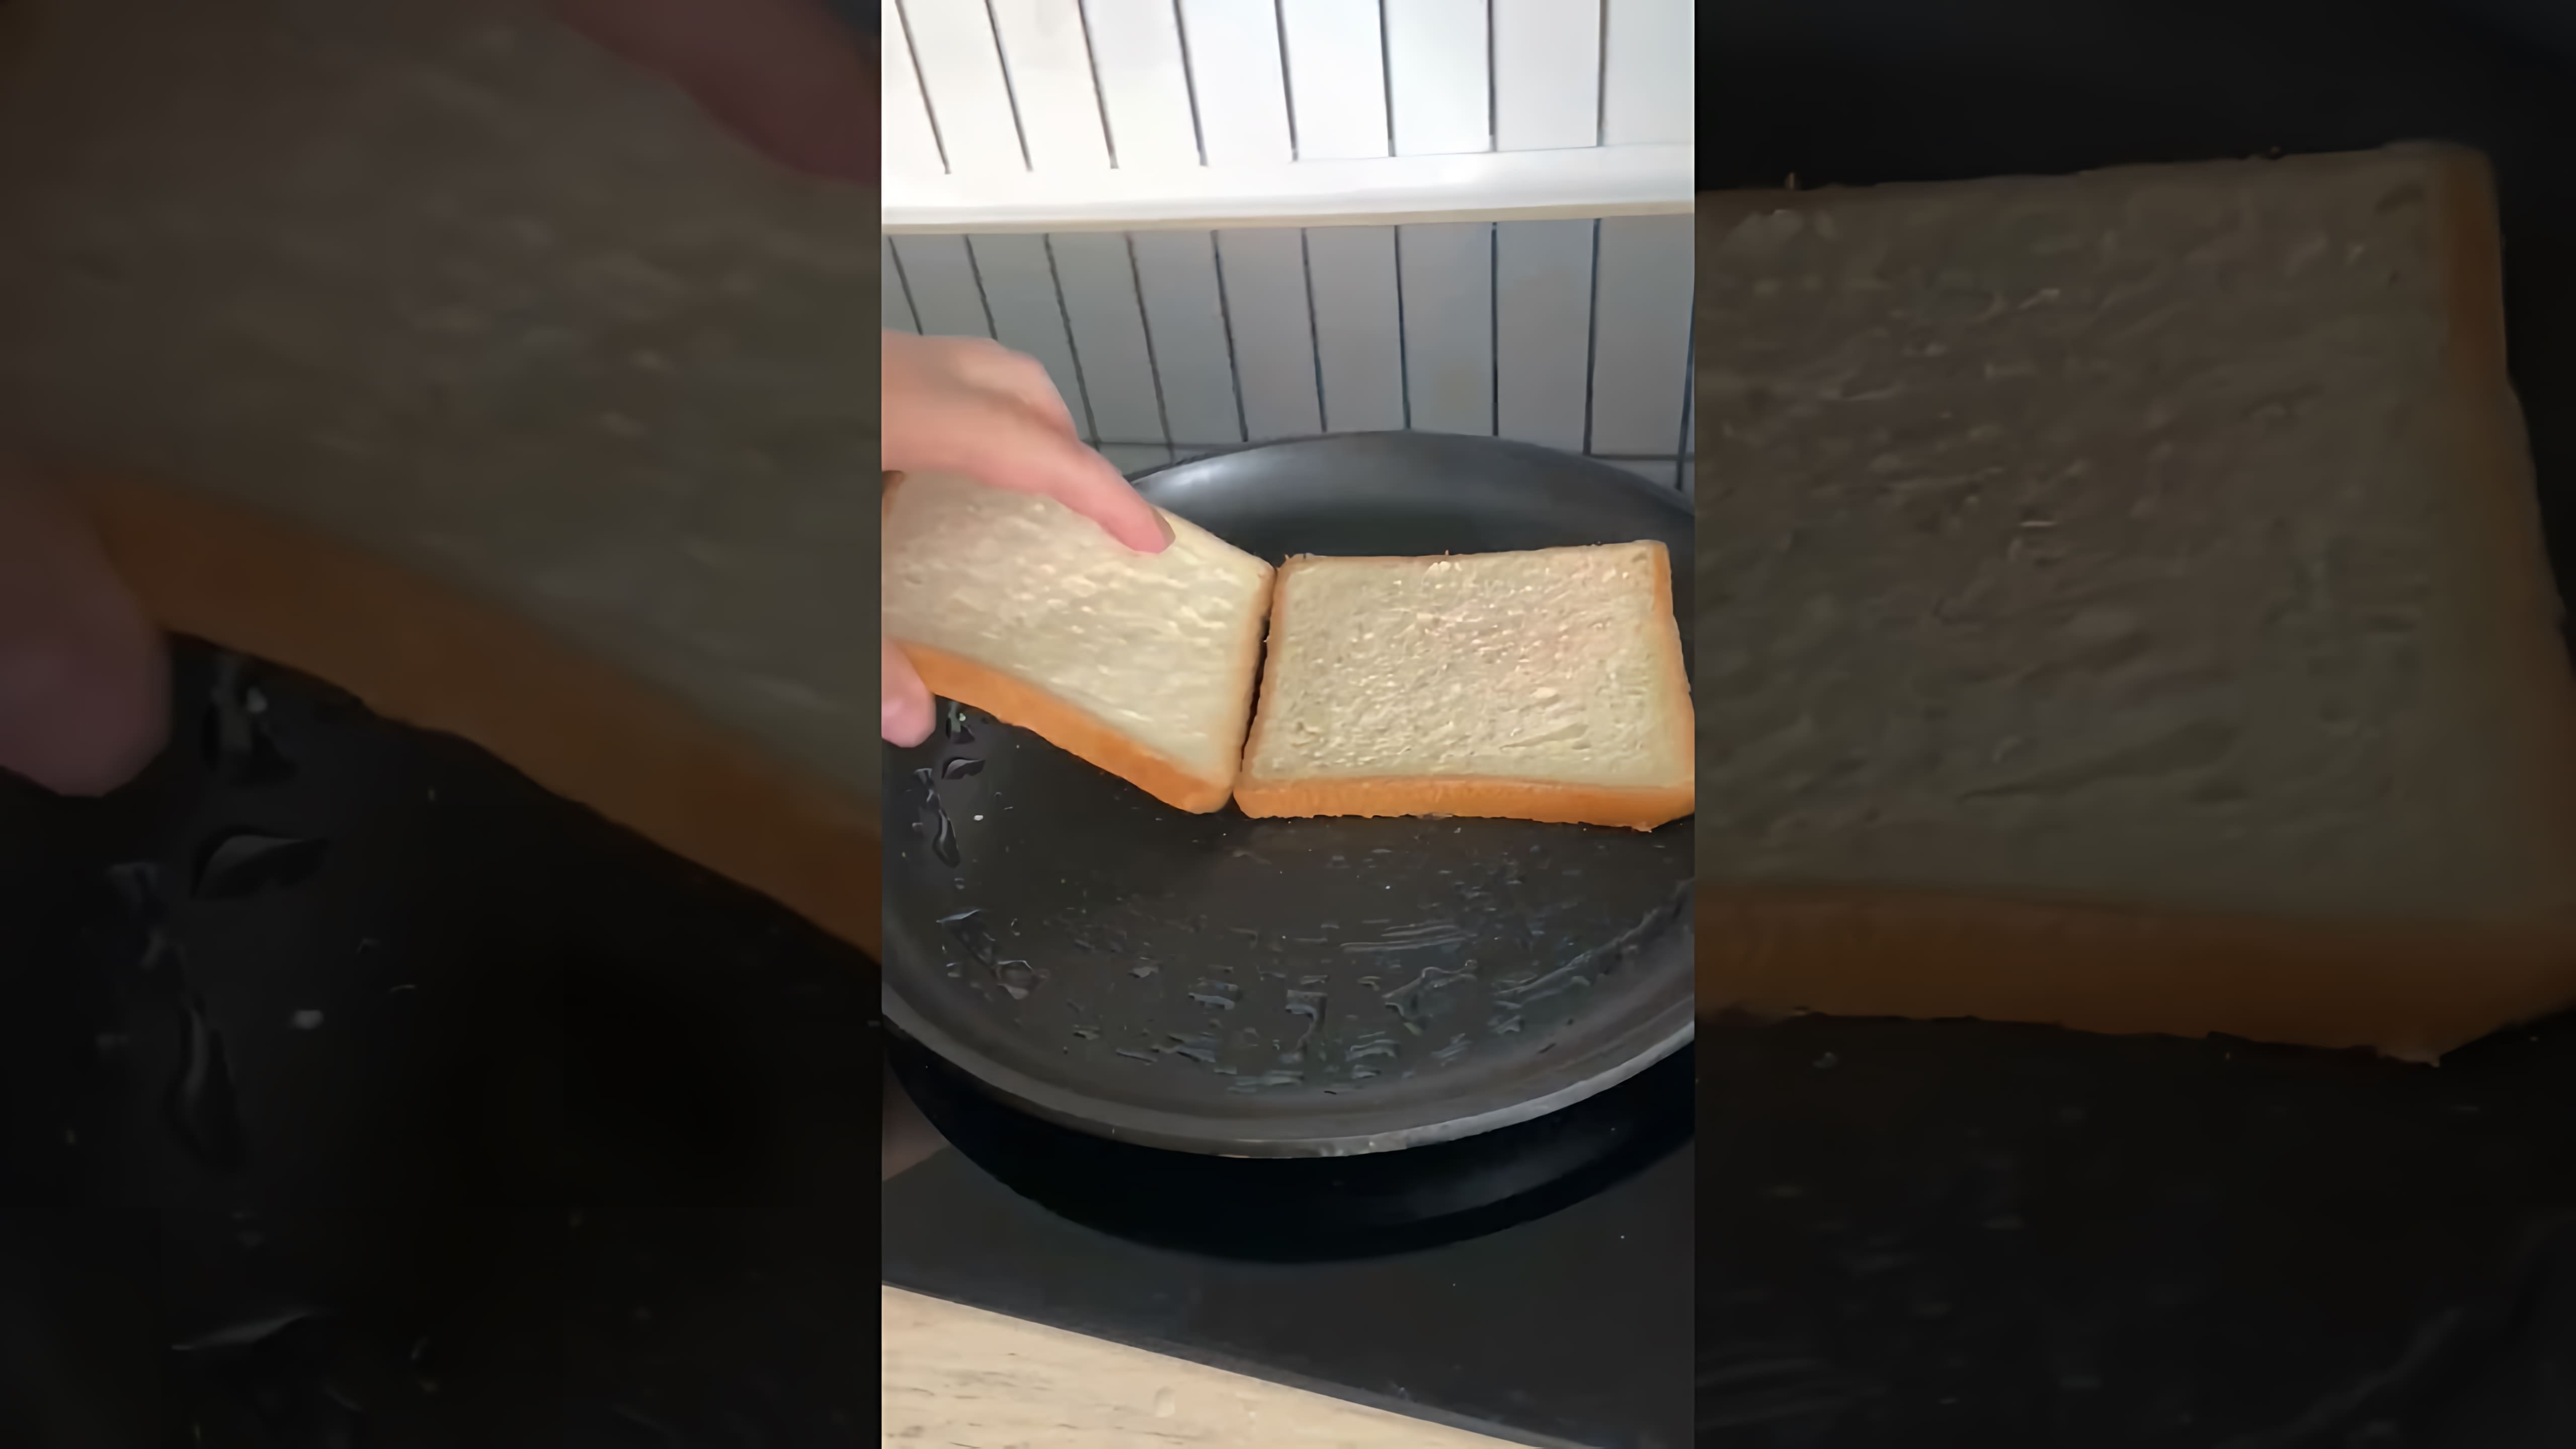 В этом видео демонстрируется рецепт Клаб сэндвича с тунцом